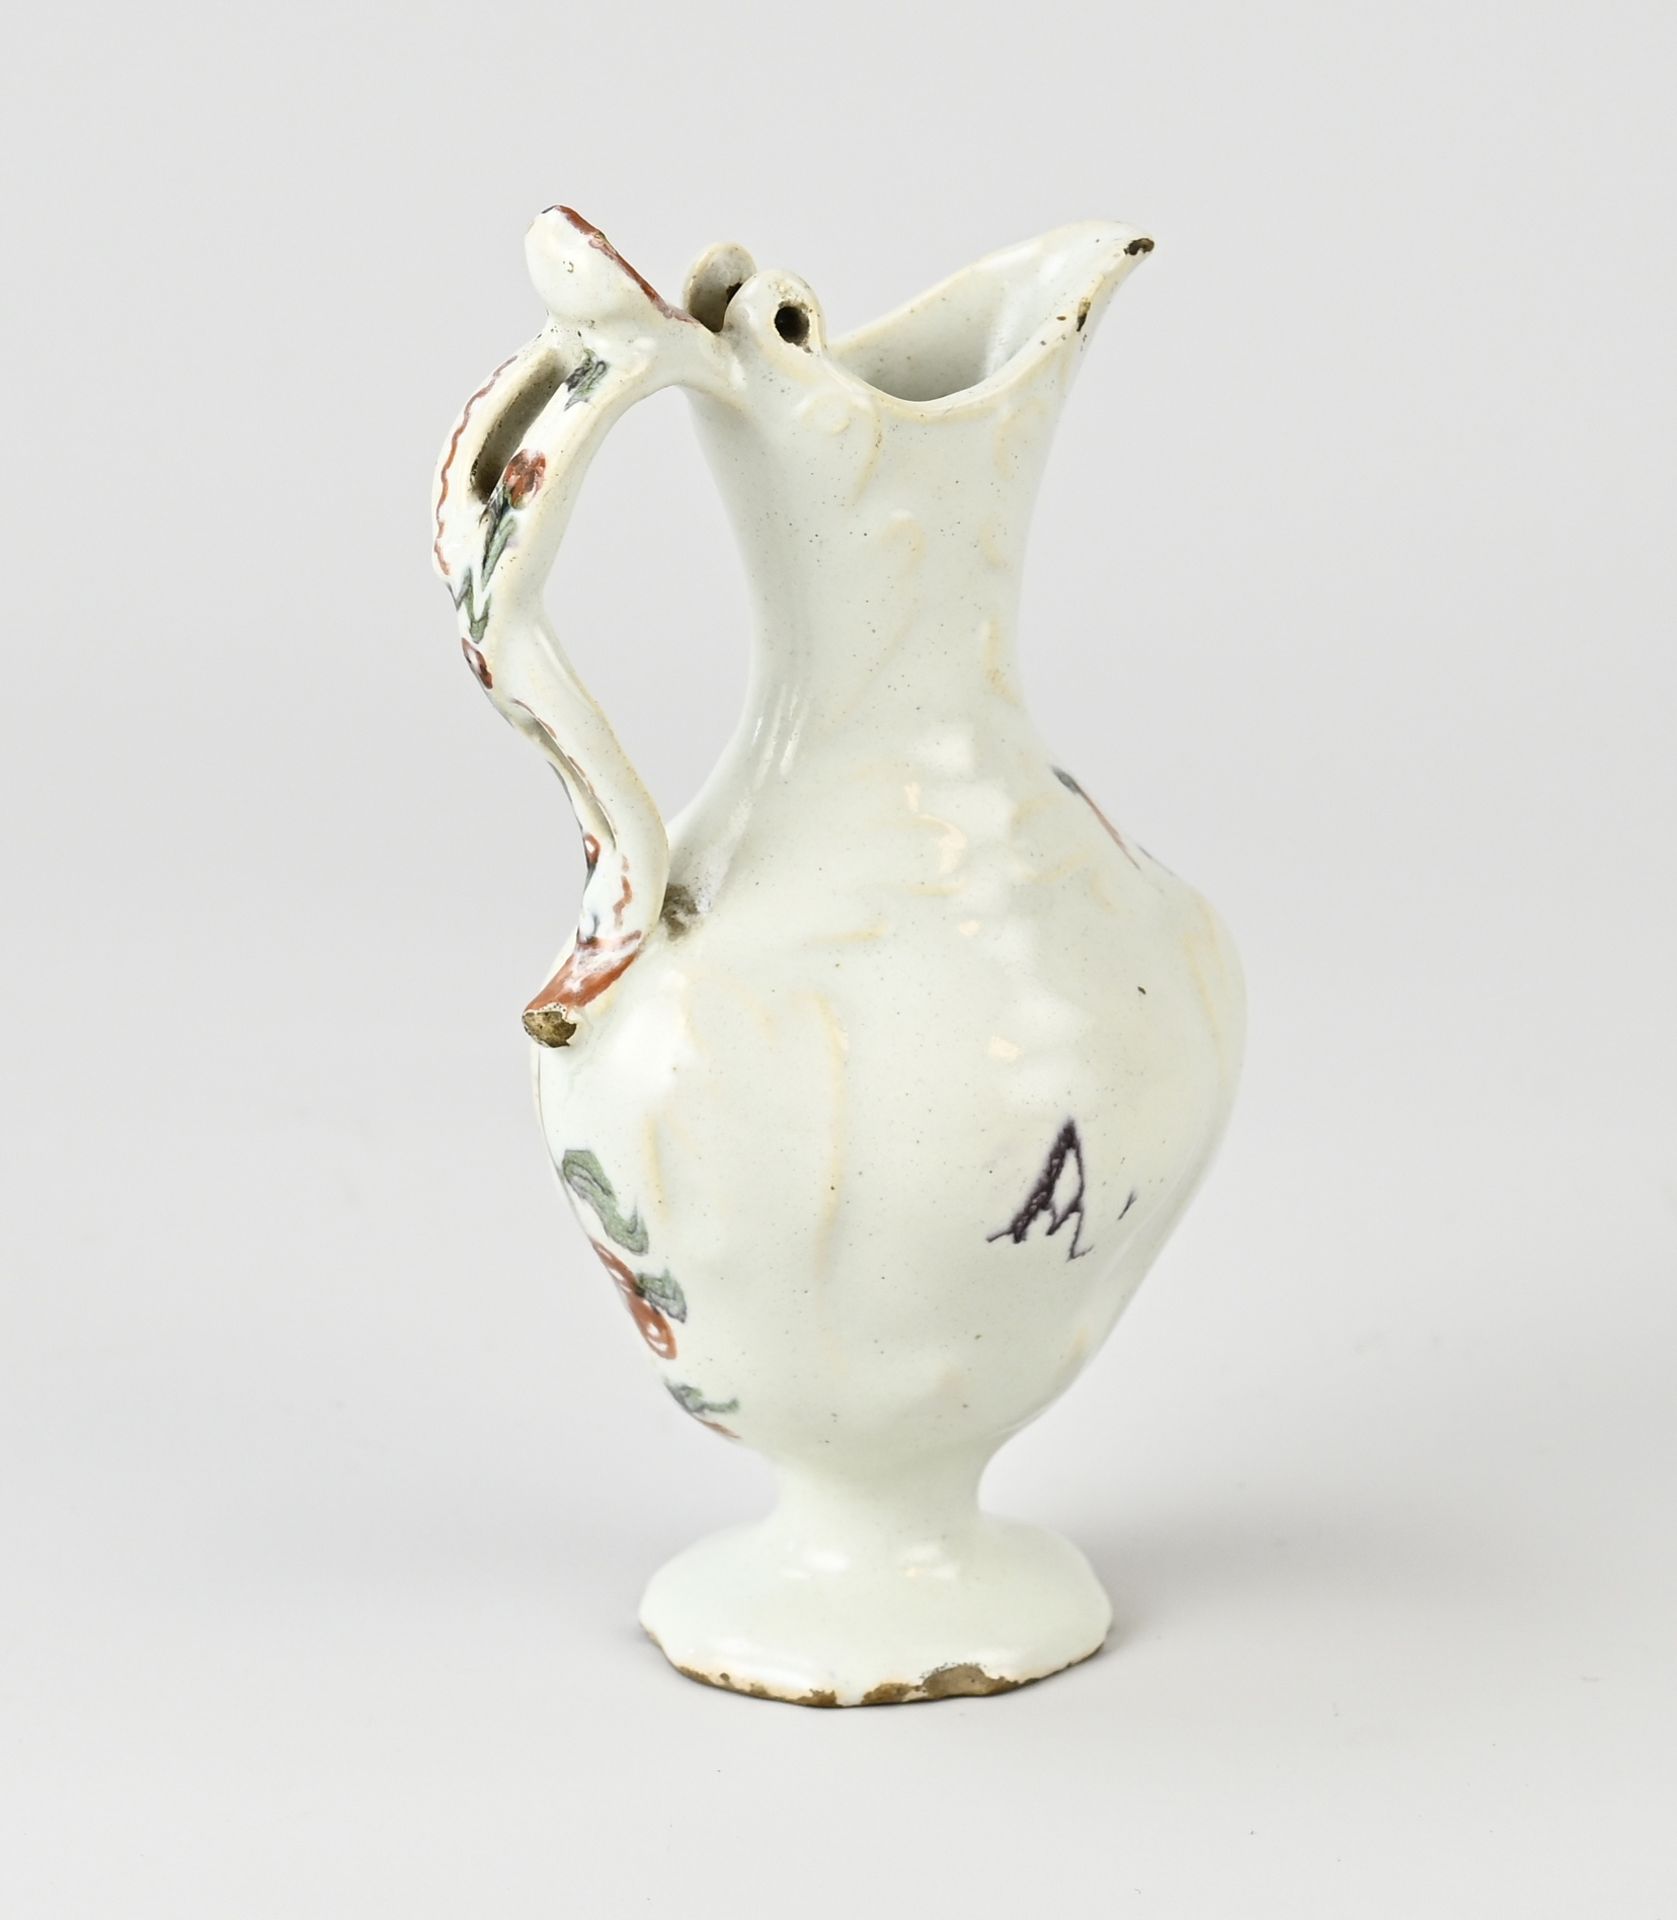 Rare 18th century Delft jug - Image 2 of 3